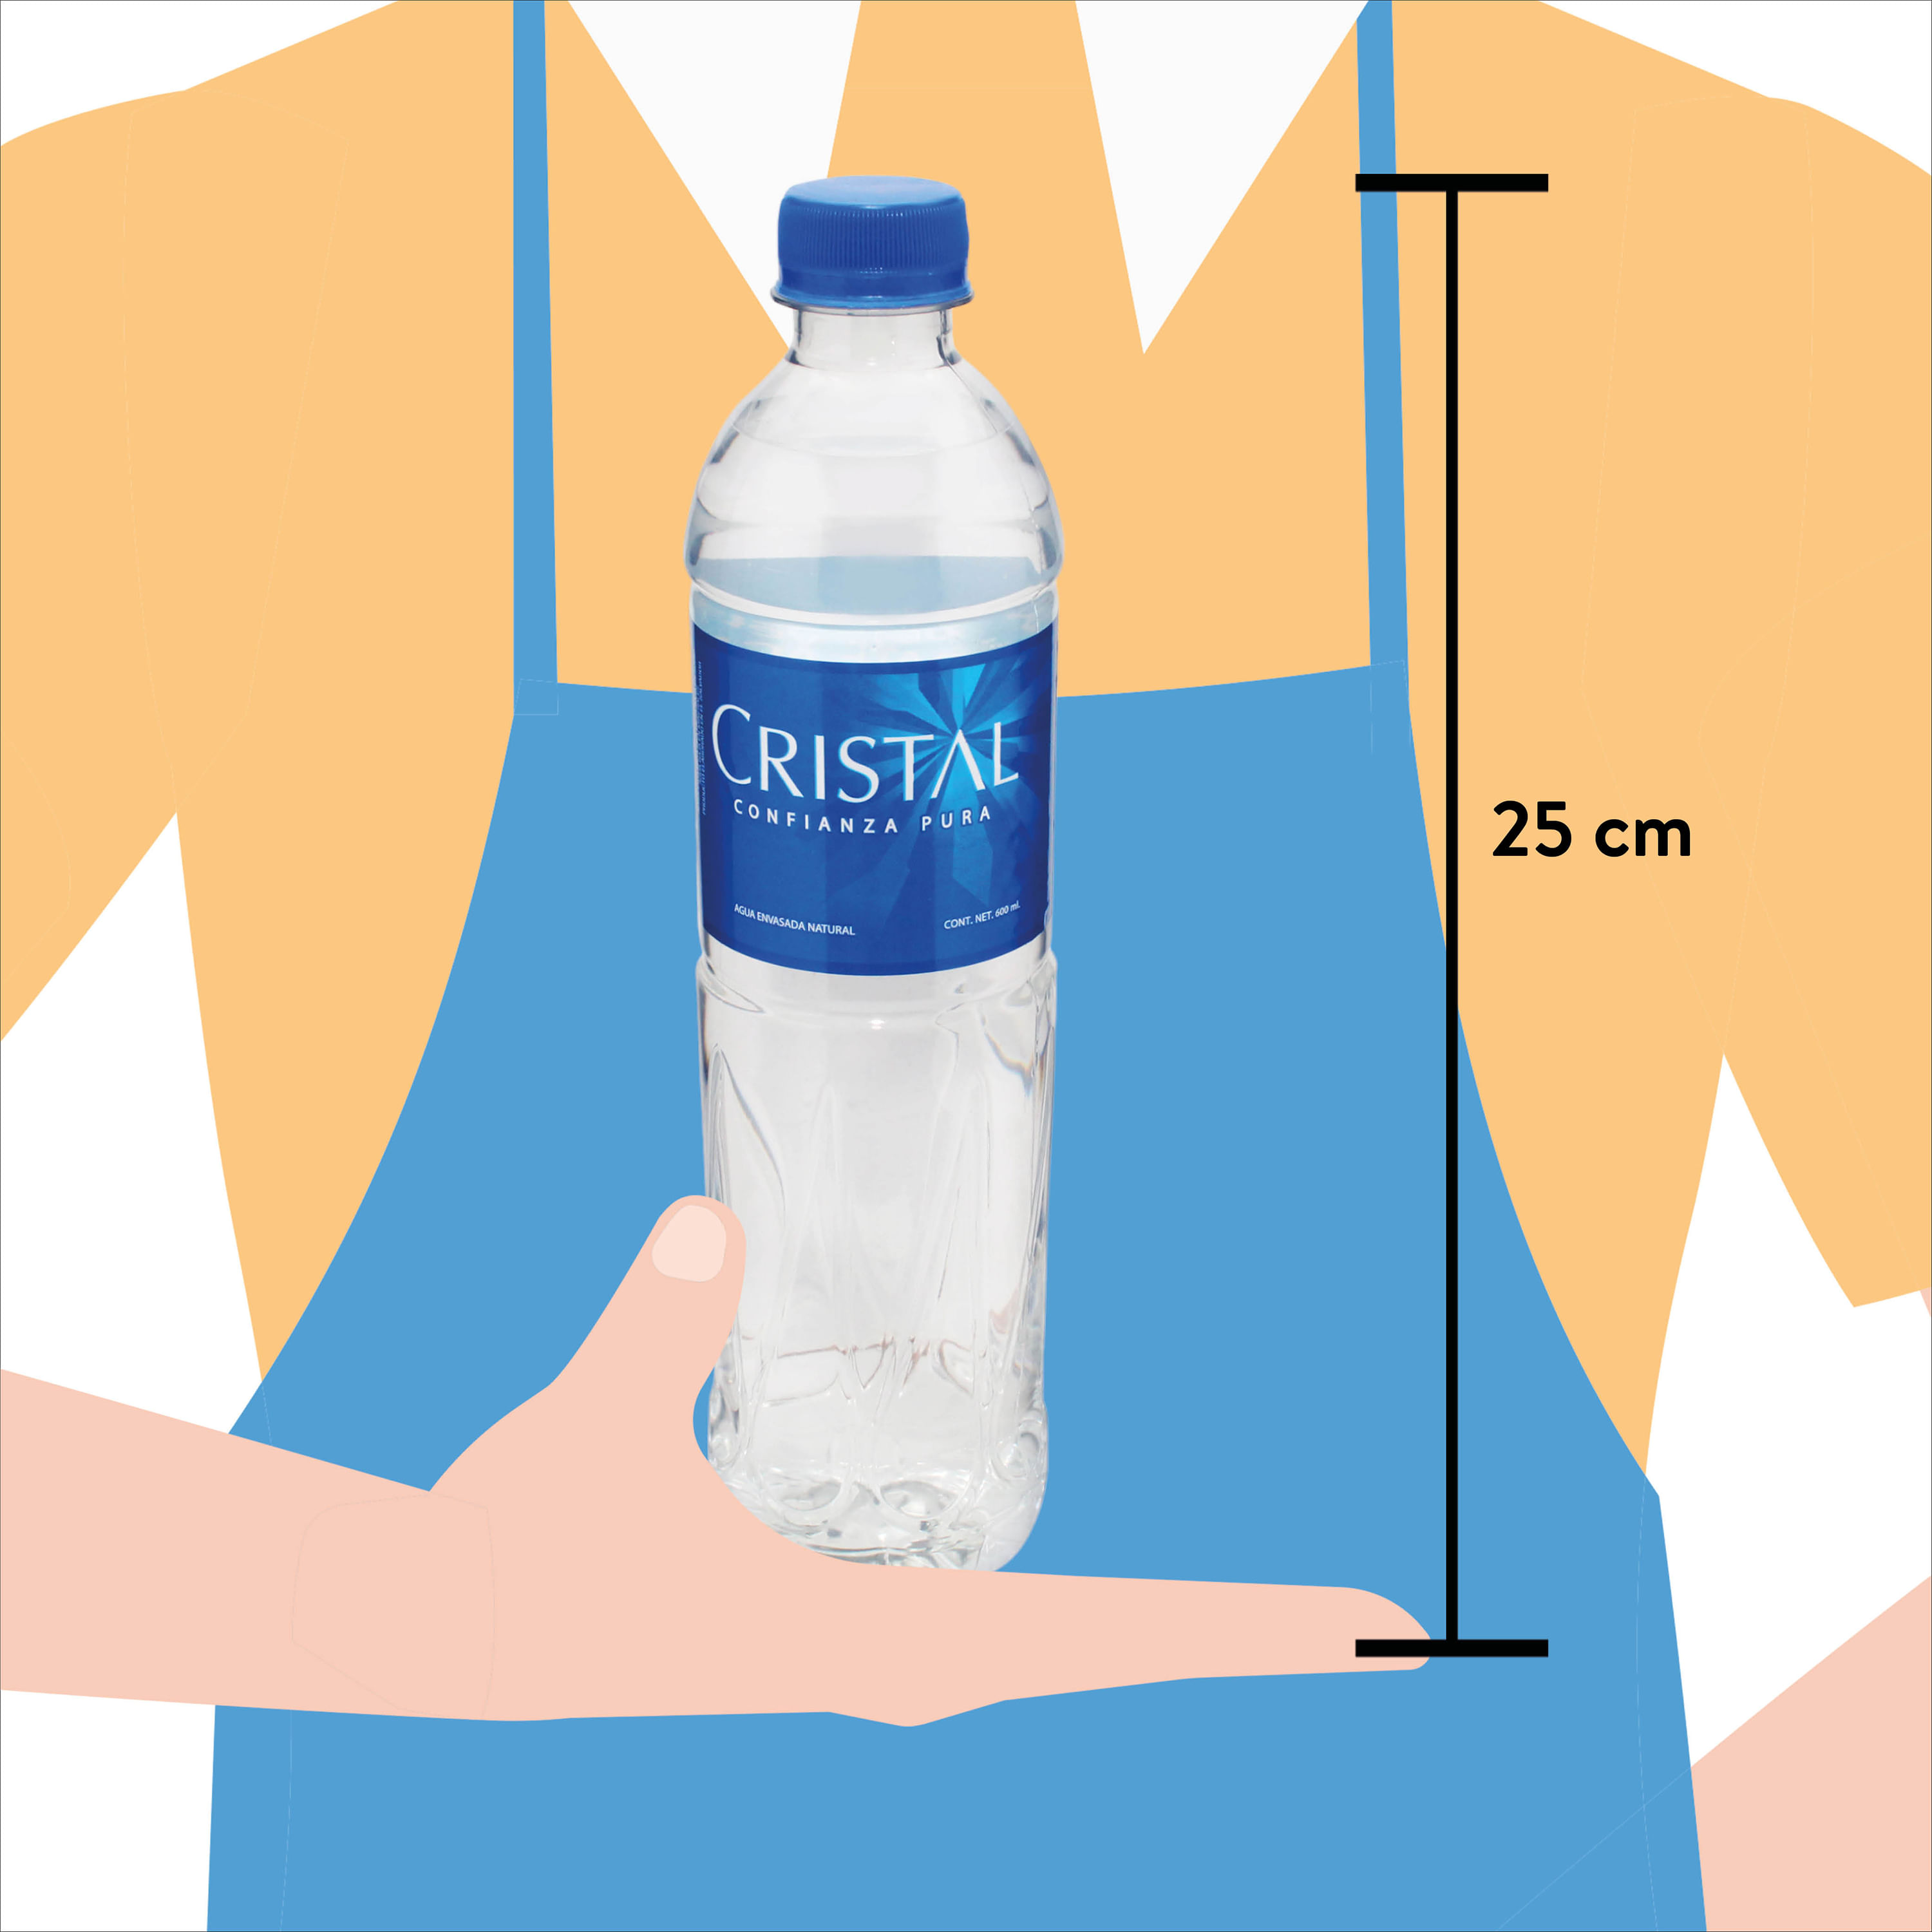 Agua mineral natural botella 1 l · FONT VELLA · Supermercado El Corte  Inglés El Corte Inglés